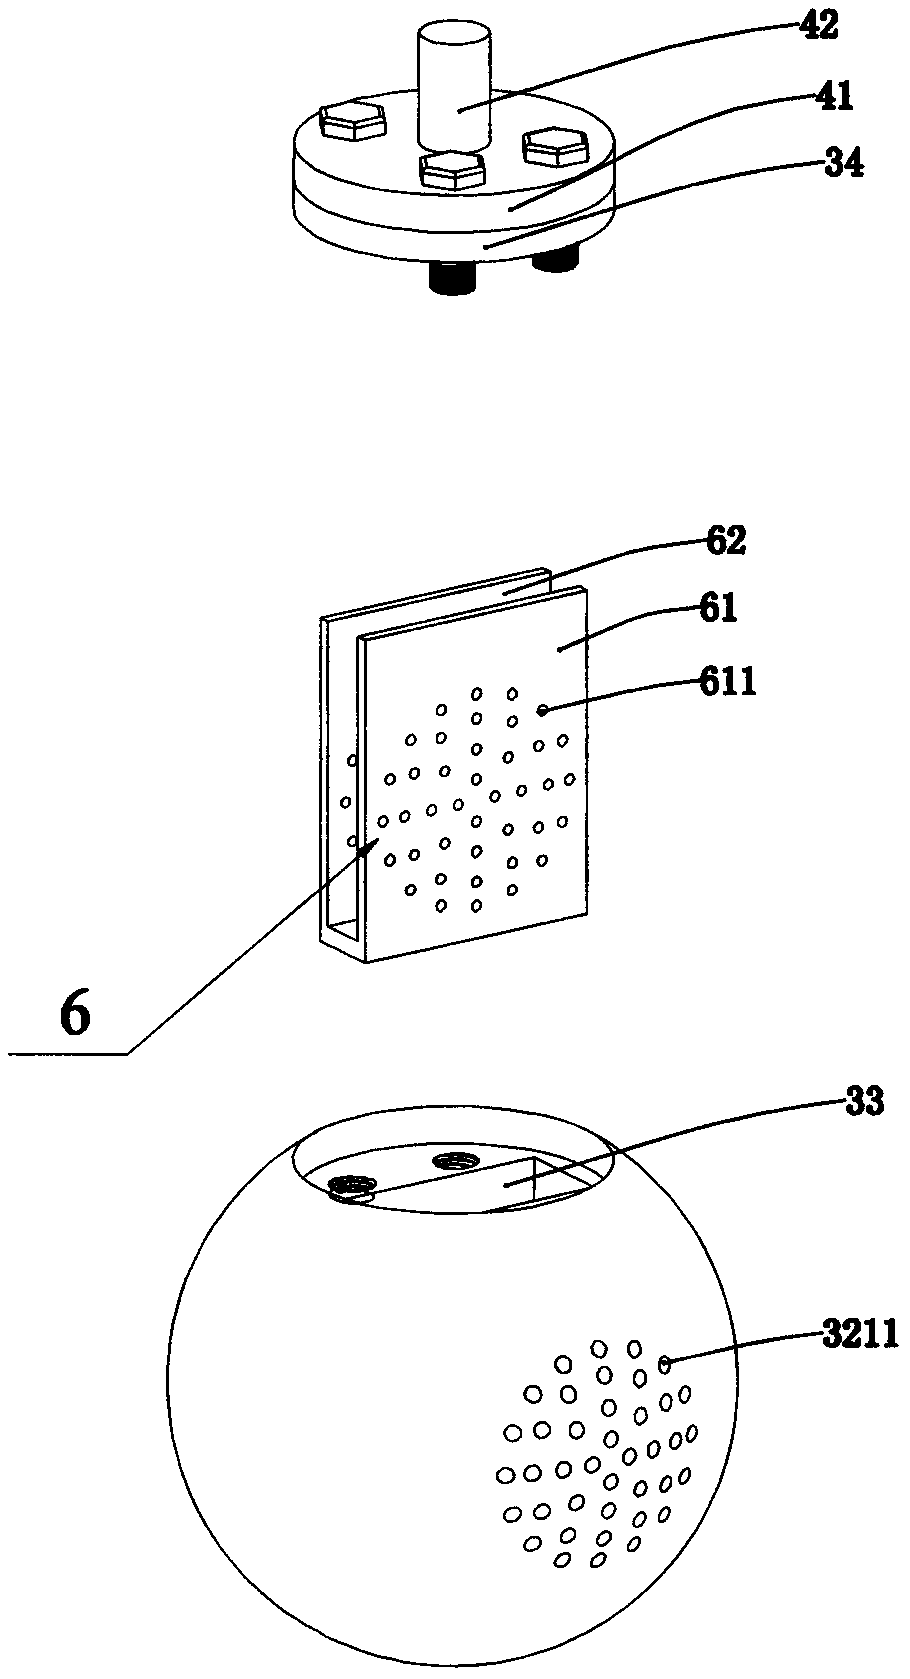 A regulating ball valve